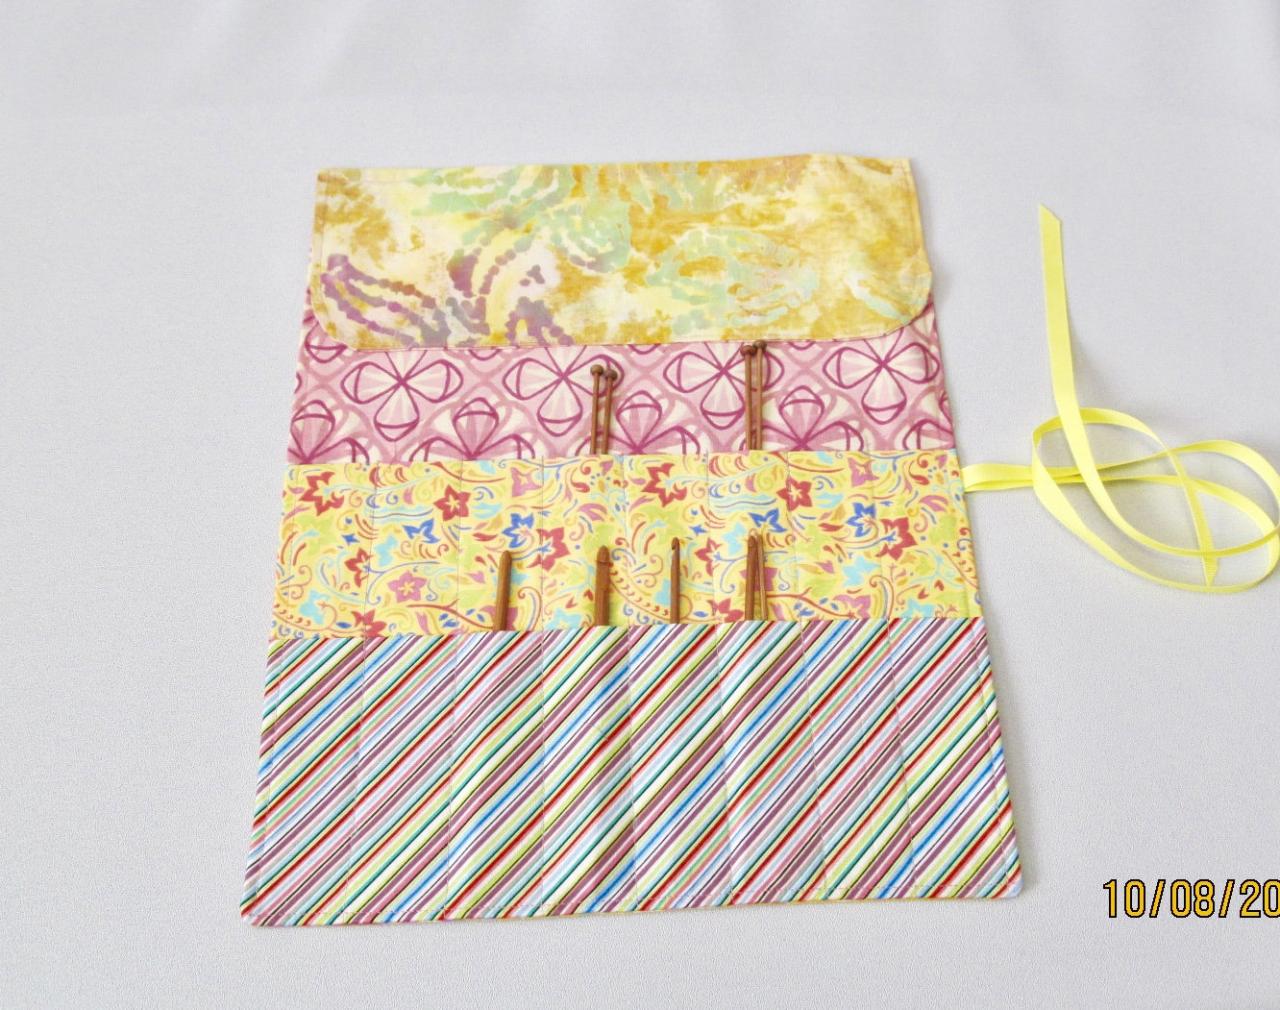 Knitting Needle/ Crochet Hook Organizer Yellow And Pink